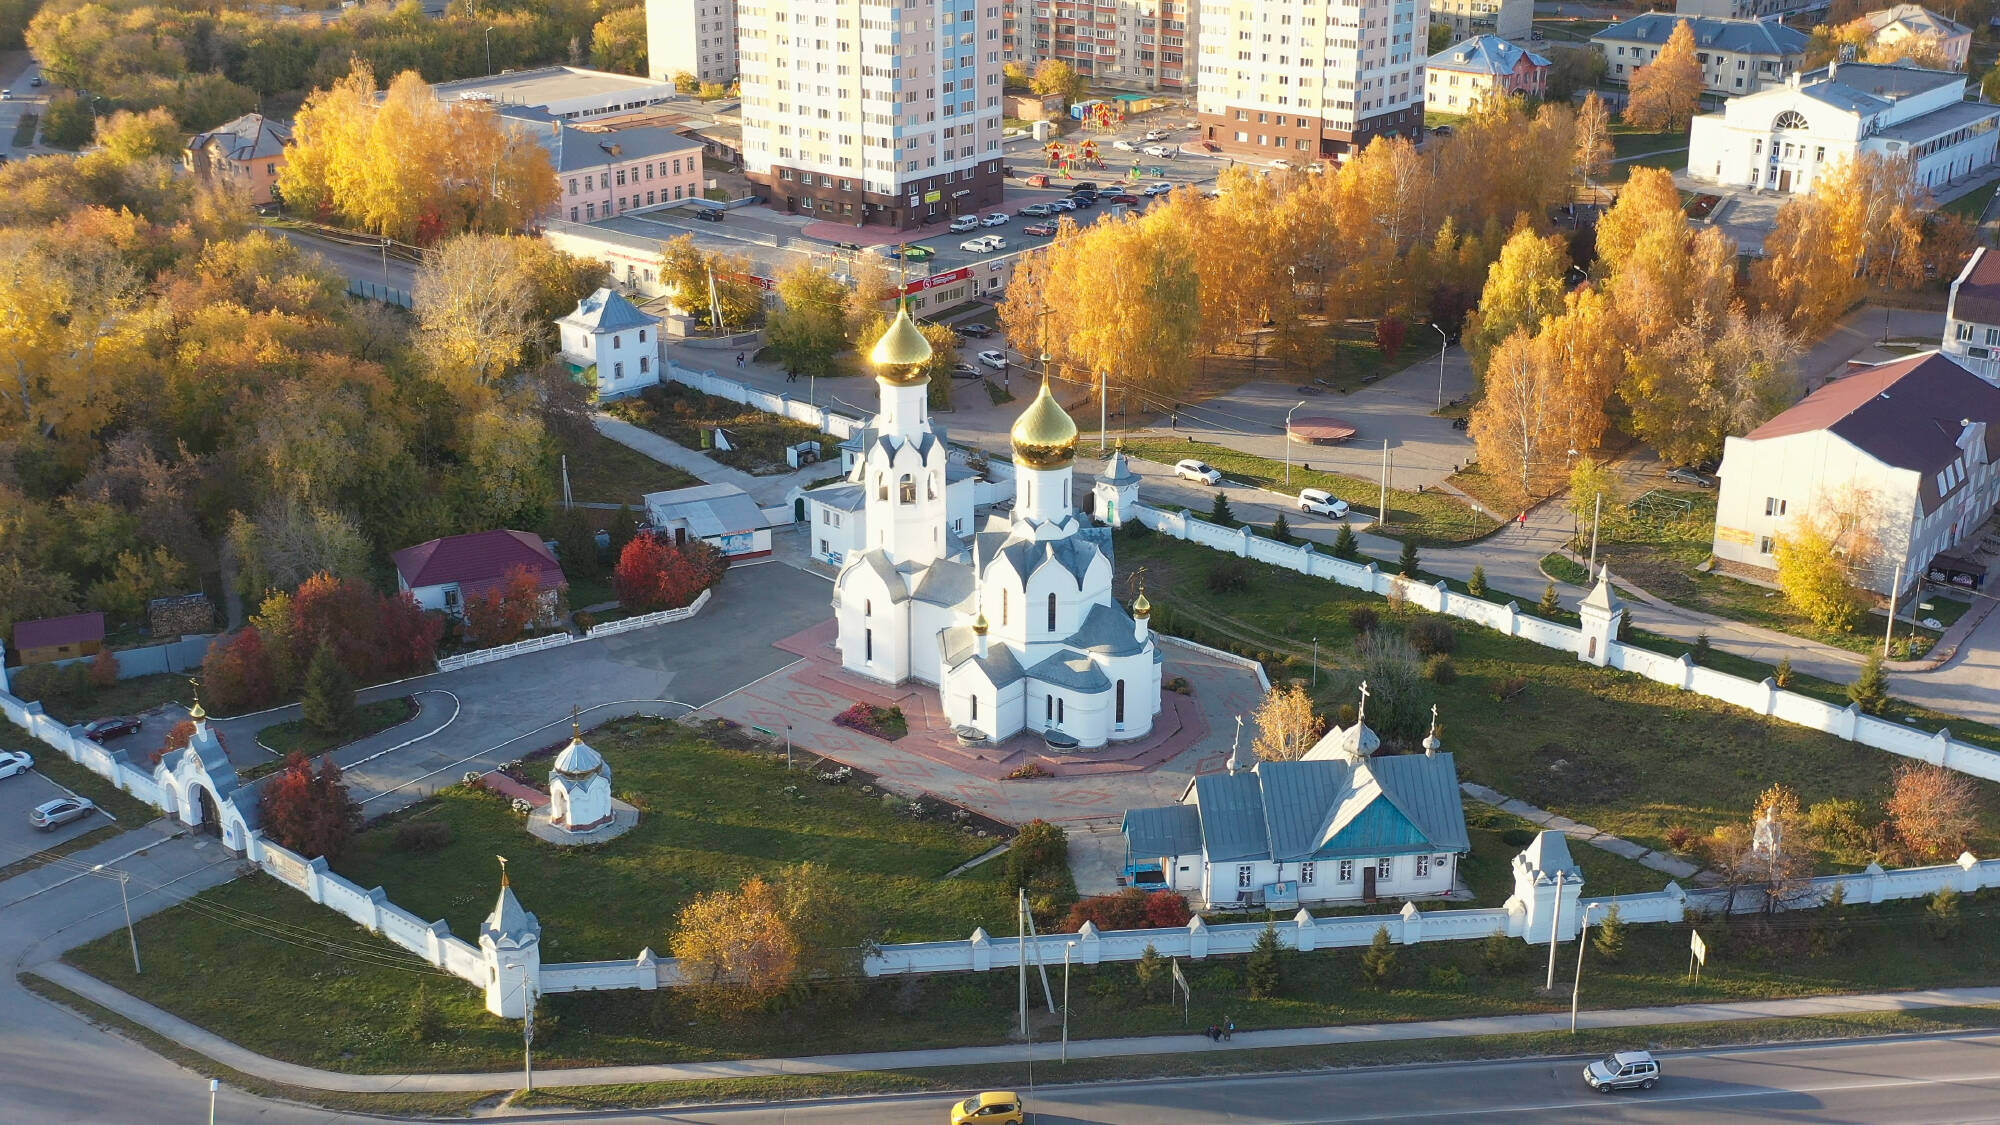 Nowosibirsk Reisen und Billigflug Russland - Hotels und Flug nach Nowosibirsk